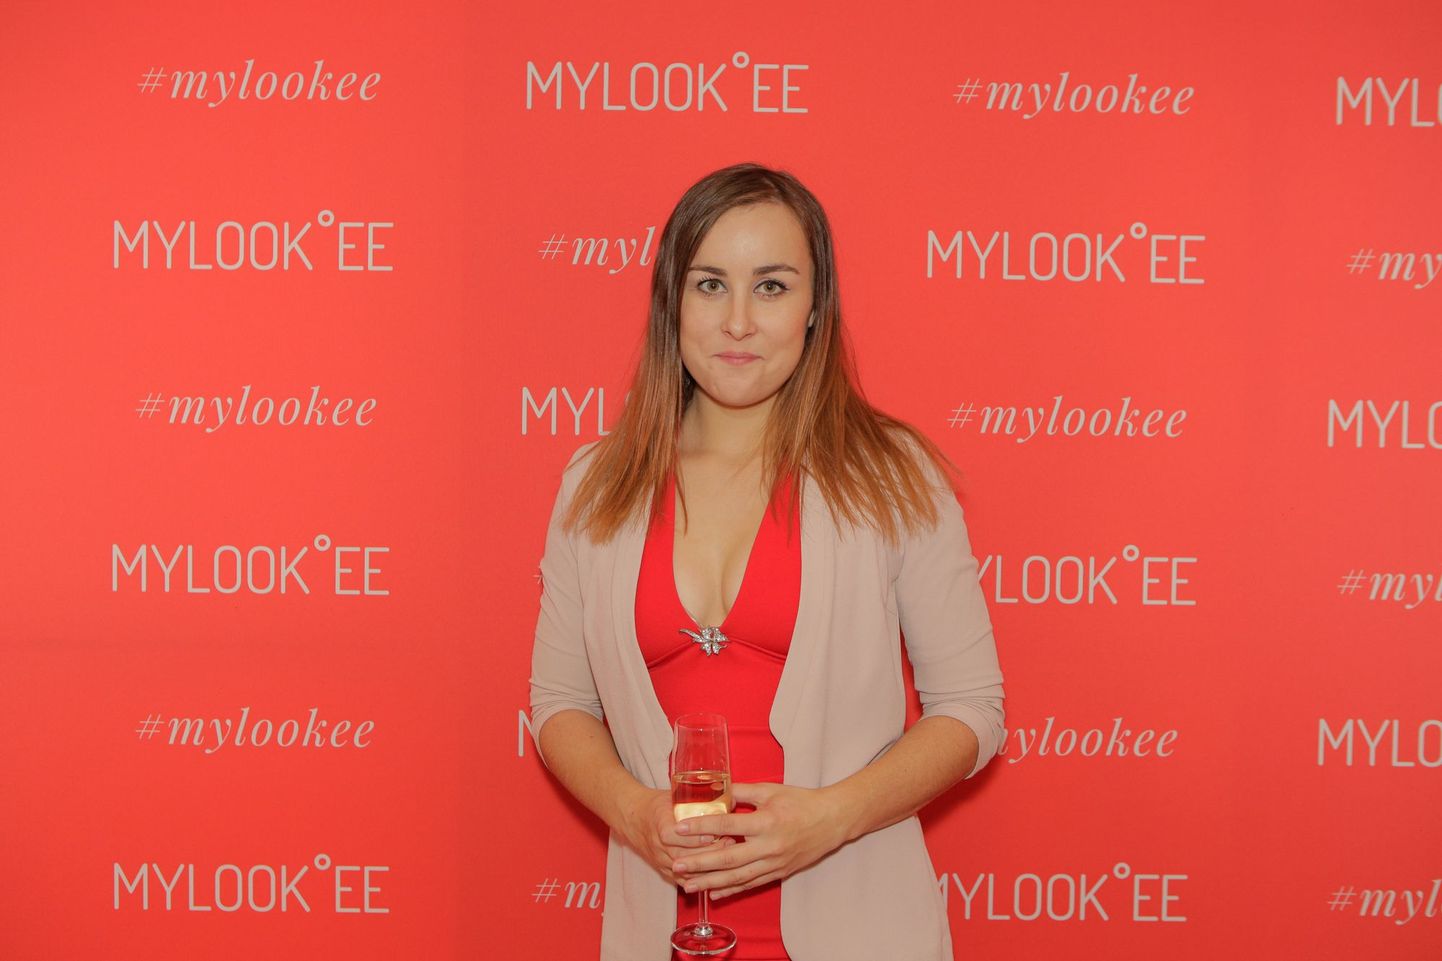 MyLook veebikaubamaja avas Tallinnas esinduspoe. Kristel Aaslaid